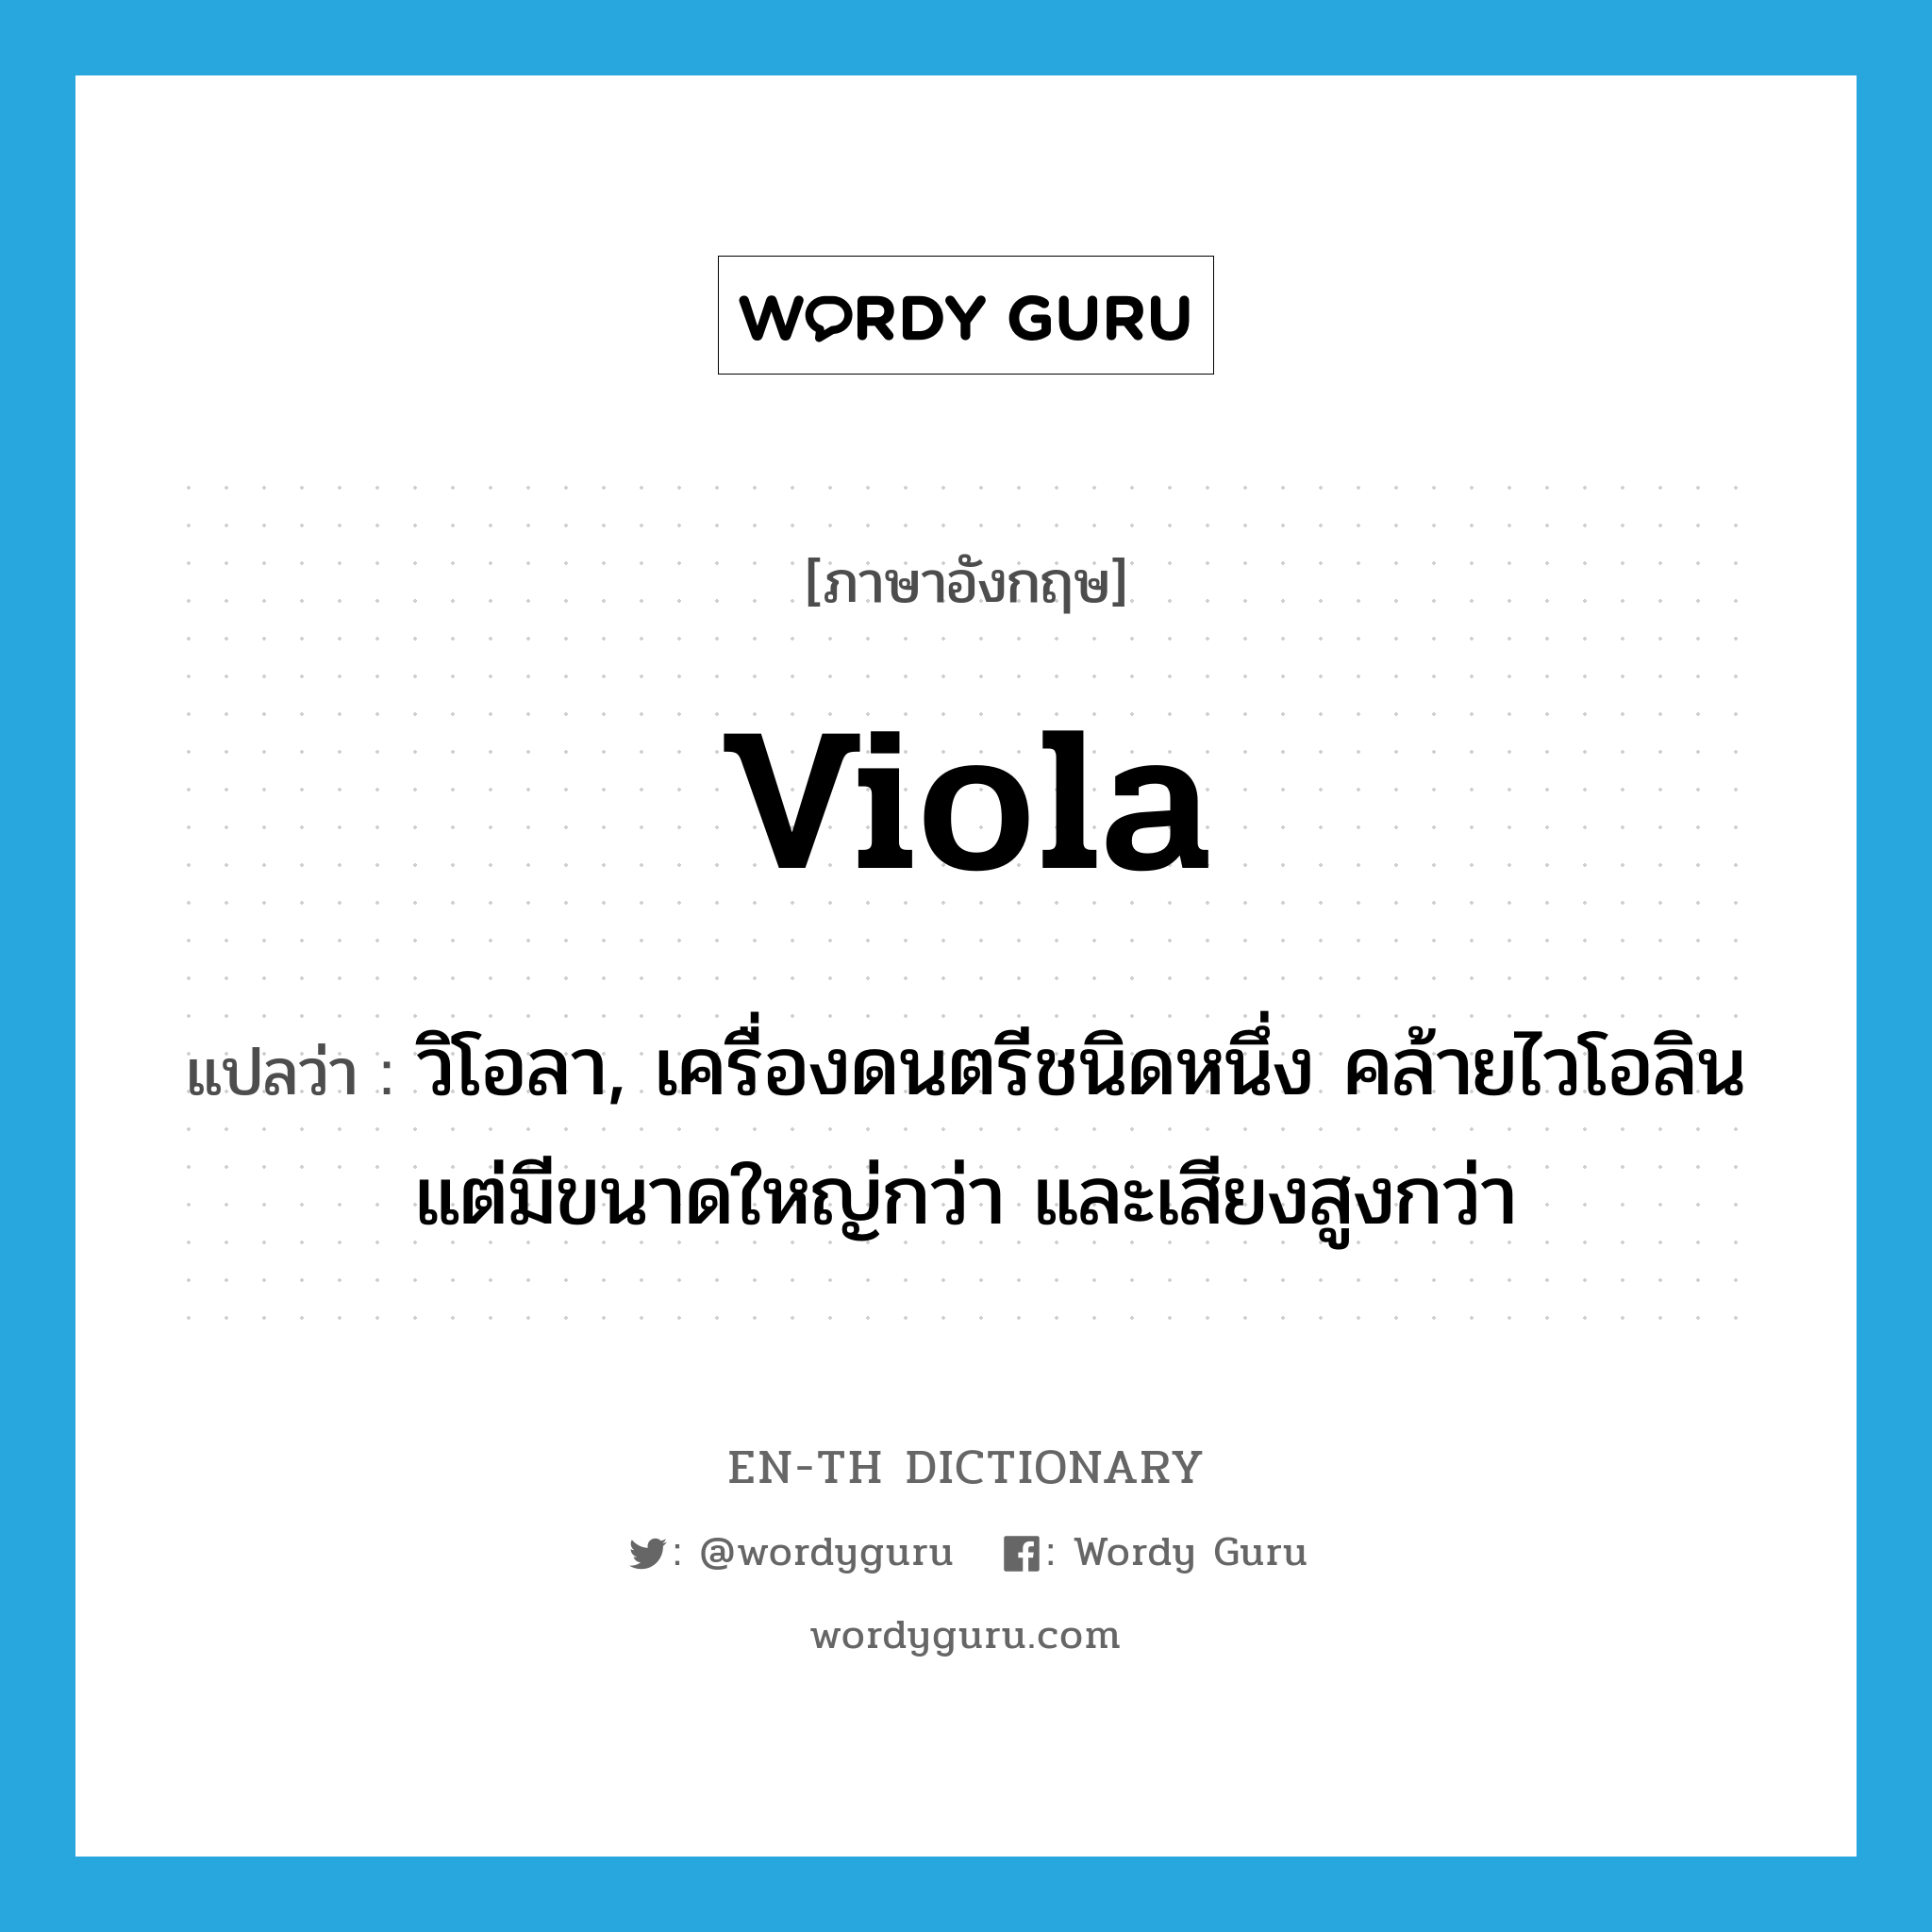 วิโอลา, เครื่องดนตรีชนิดหนึ่ง คล้ายไวโอลิน แต่มีขนาดใหญ่กว่า และเสียงสูงกว่า ภาษาอังกฤษ?, คำศัพท์ภาษาอังกฤษ วิโอลา, เครื่องดนตรีชนิดหนึ่ง คล้ายไวโอลิน แต่มีขนาดใหญ่กว่า และเสียงสูงกว่า แปลว่า viola ประเภท N หมวด N